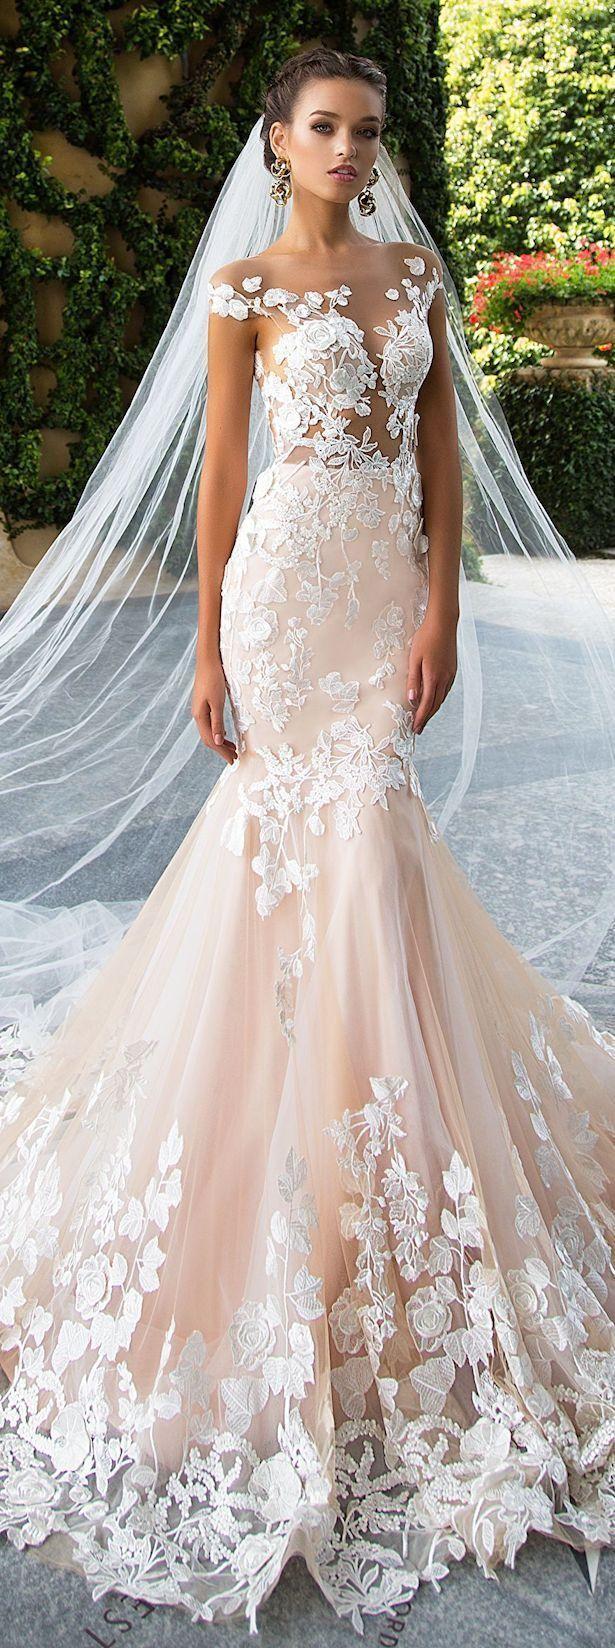 زفاف - Wedding Dresses 2018